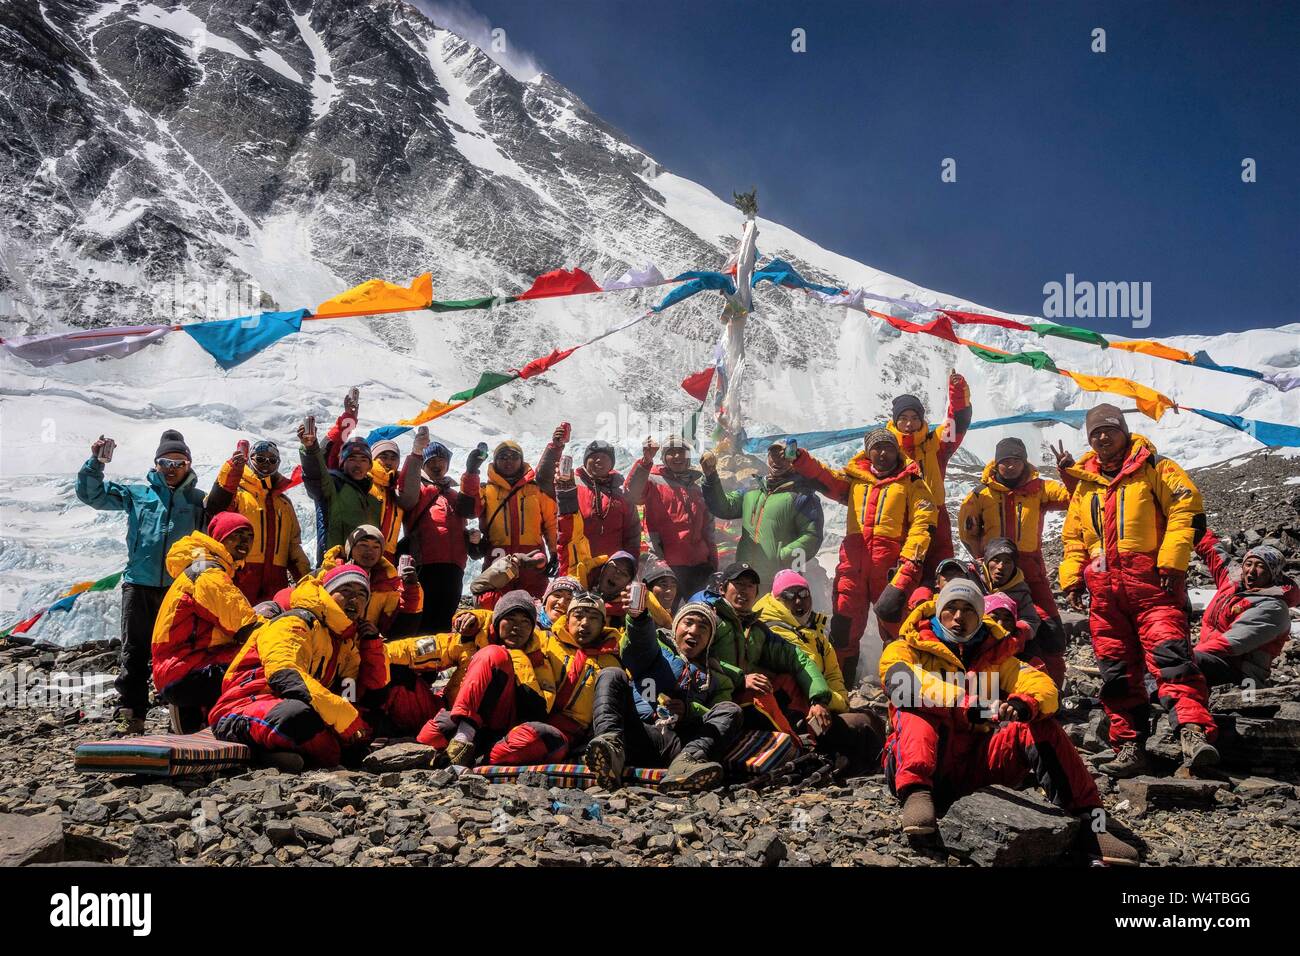 (190725) - LHASA, 25. Juli 2019 (Xinhua) - Foto am 23. April, 2016 zeigt Bergführer für Fotos während der Skalierung Mount Qomolangma im Südwesten Chinas Tibet autonomen Region posieren. Tibet Himalaya Bergsteigen Leitfaden Schule feiert ihr 20-jähriges Jubiläum in Lhasa, der Hauptstadt von Südwesten Chinas Tibet autonomen Region, am 12. Juli 2019. Gegründet 1999, Tibet Himalaya Bergsteigen Guide School, der ersten professionellen Bergsteigen Training Schule in China, hat rund 300 Absolventen der high-altitude Guides, Küchenpersonal, Fotografen, Sportler und Übersetzer geschult. Da die congr Stockfoto